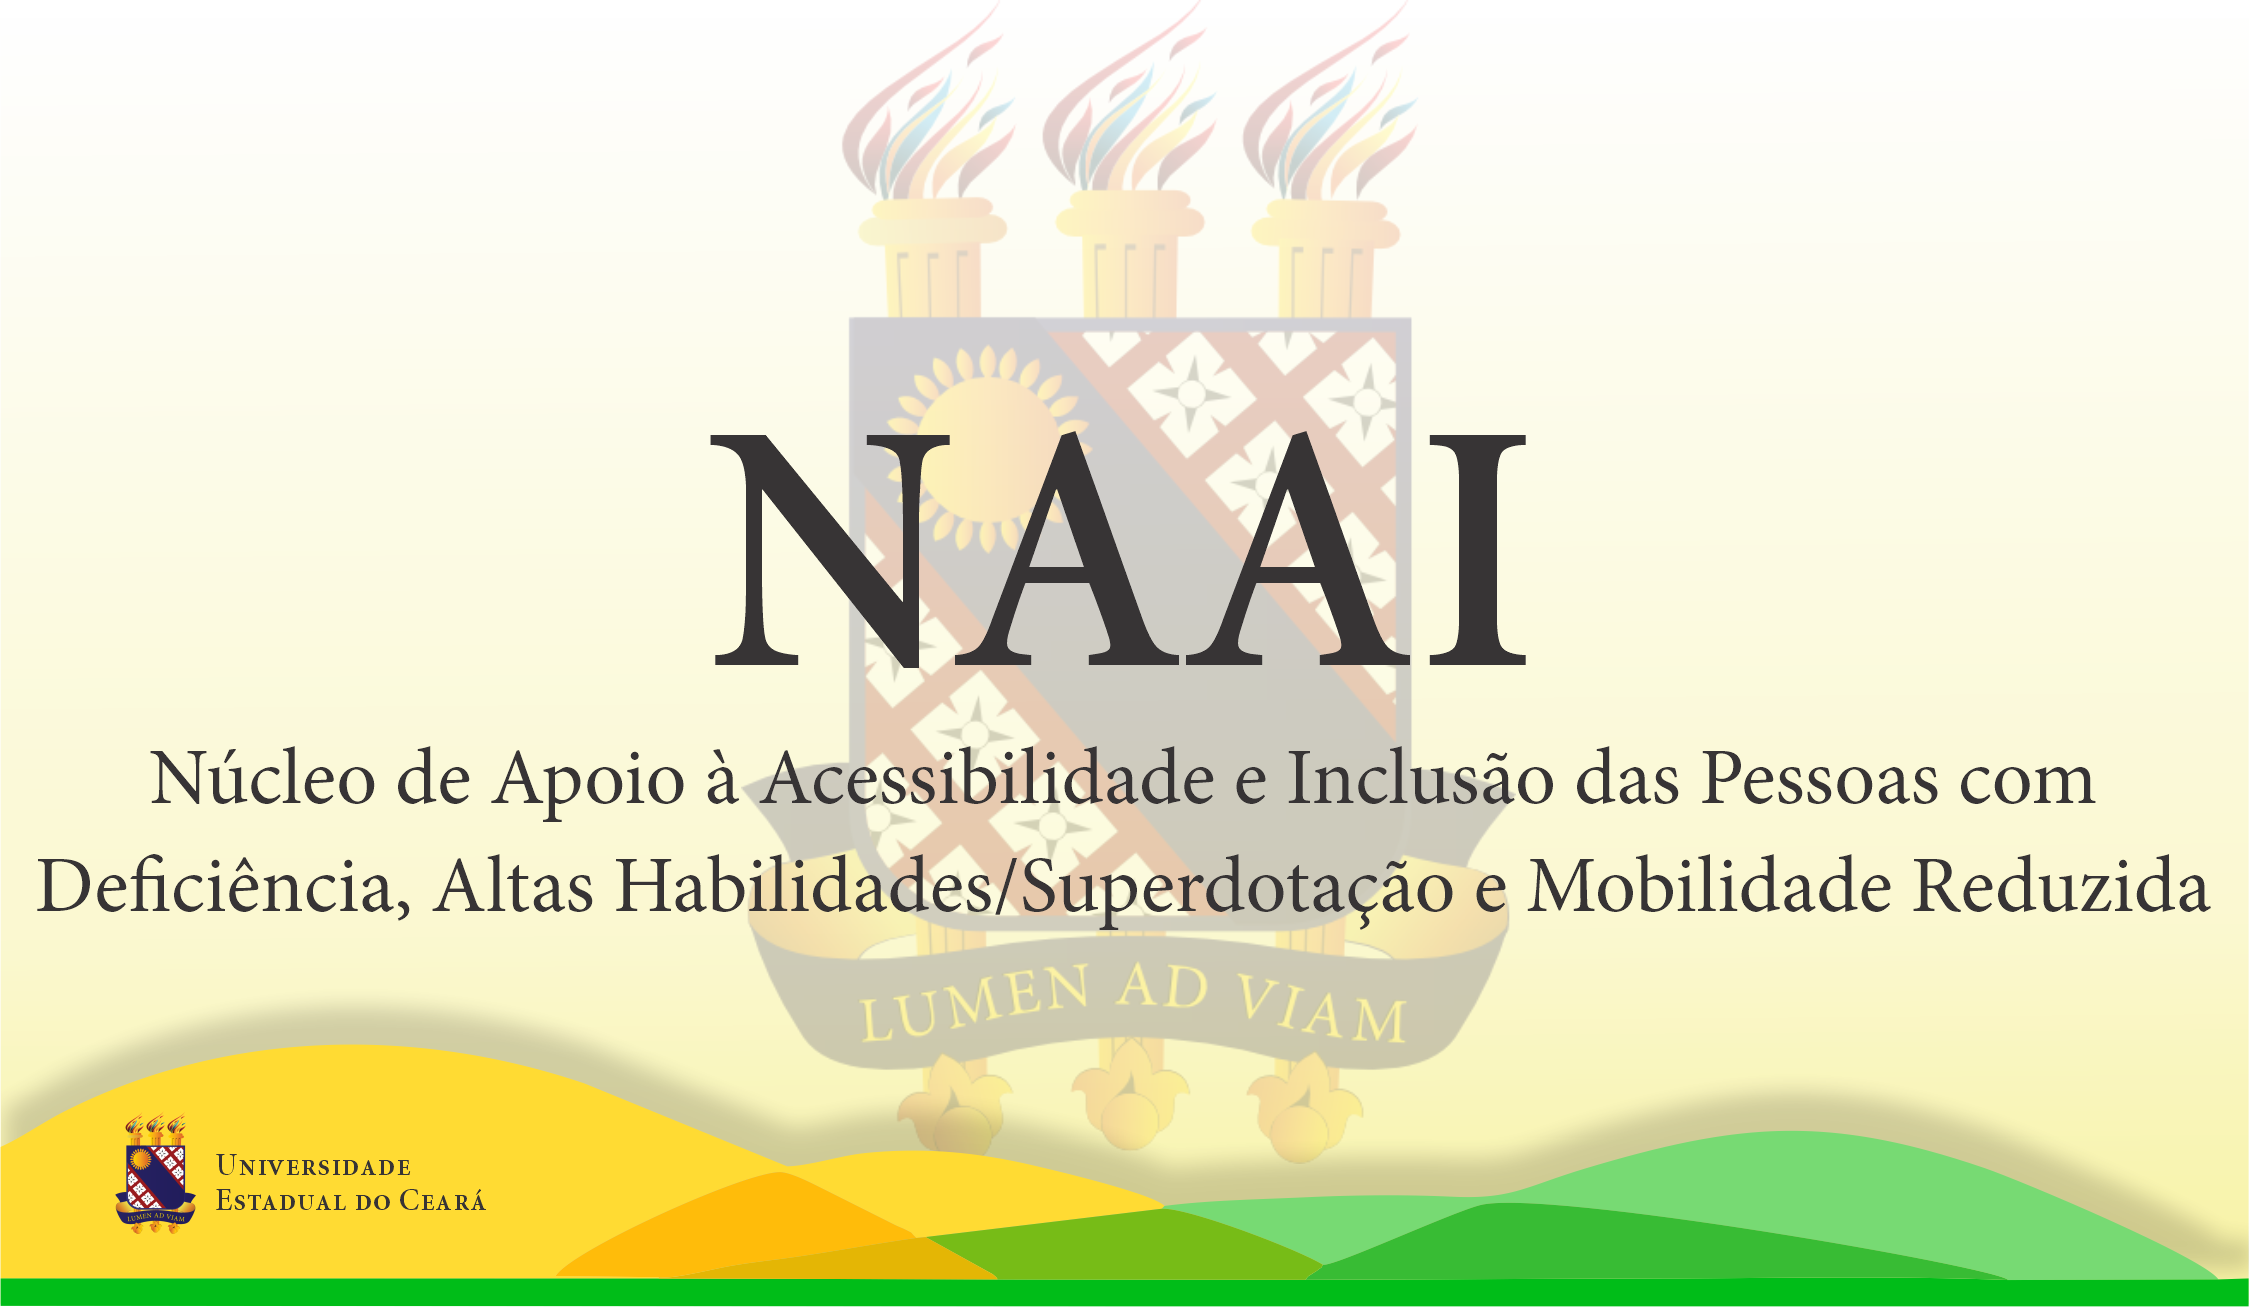 NAAI – Núcleo de Apoio à Acessibilidade e Inclusão das Pessoas com Deficiência